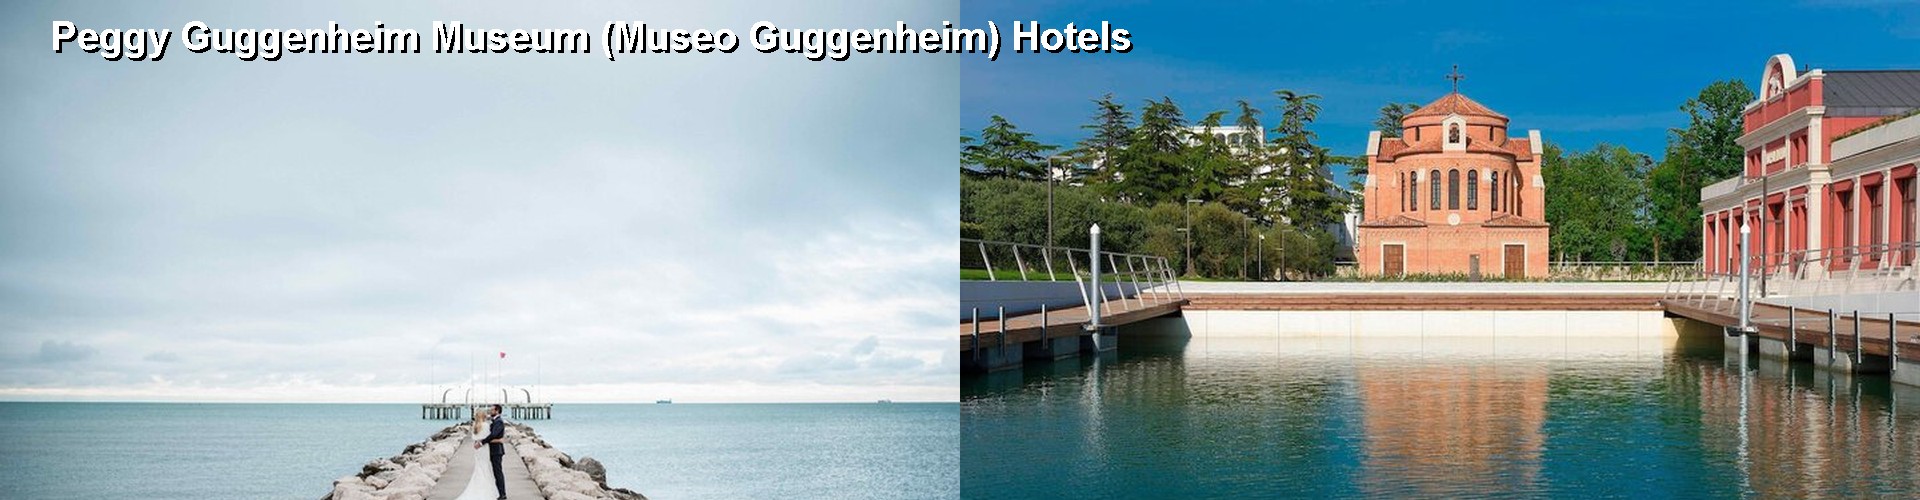 5 Best Hotels near Peggy Guggenheim Museum (Museo Guggenheim)